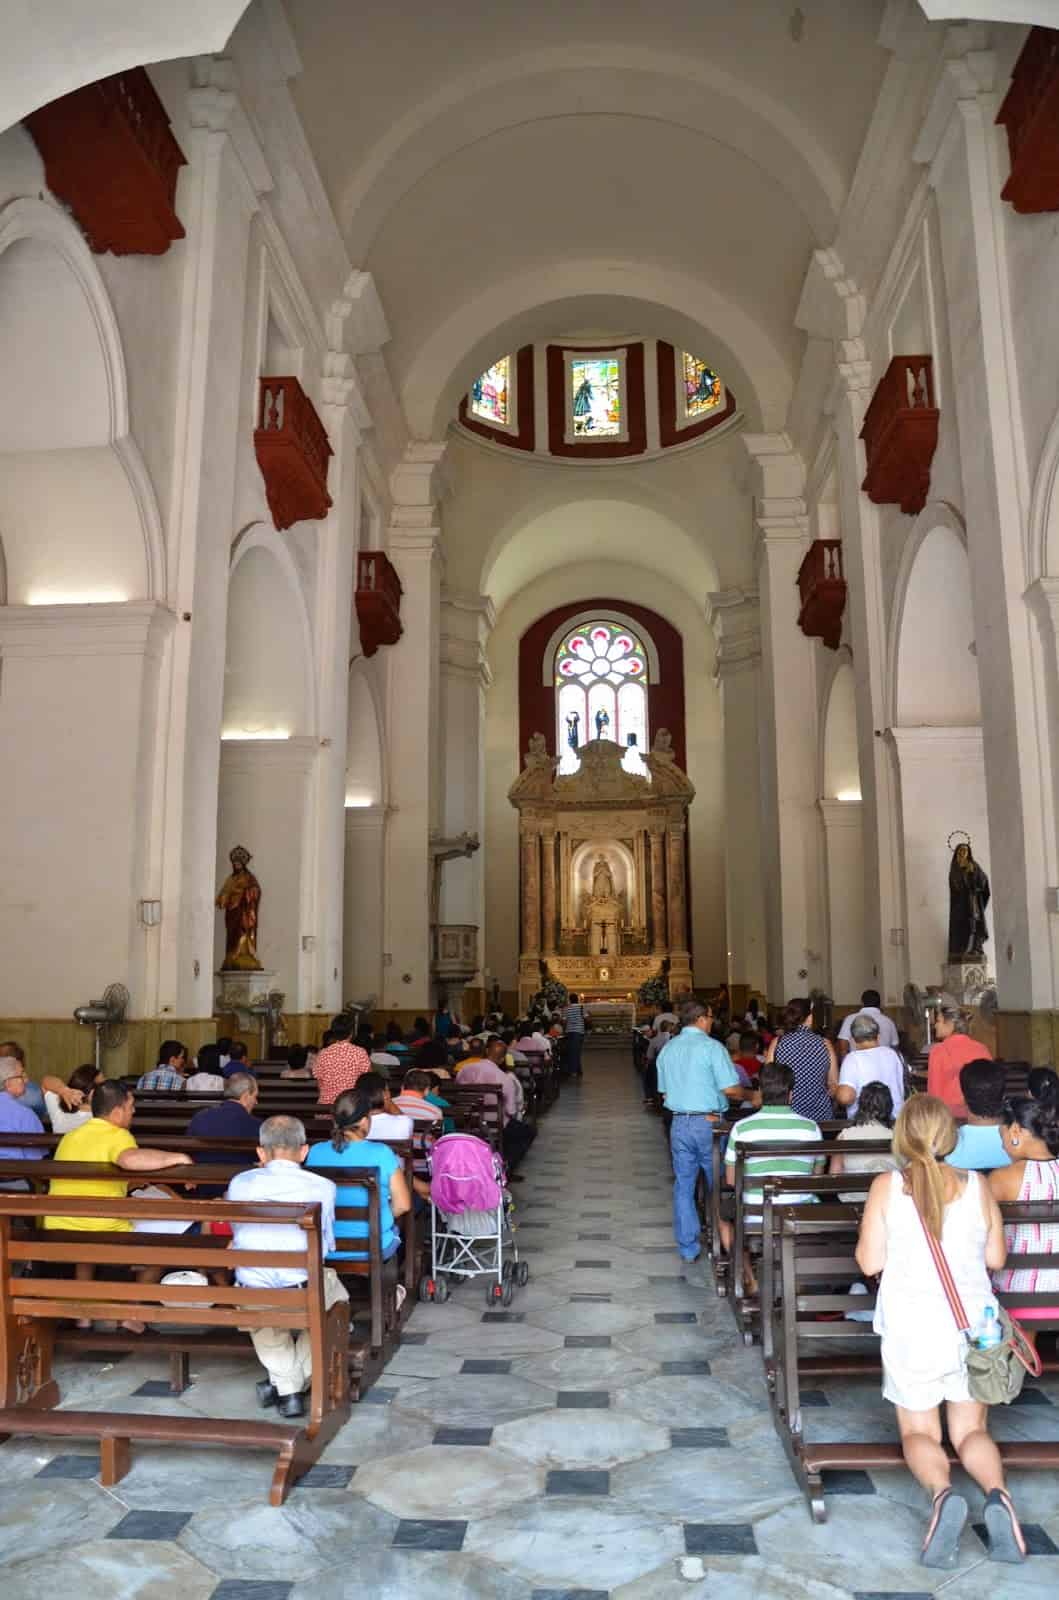 Church of San Pedro Claver in El Centro, Cartagena, Bolívar, Colombia